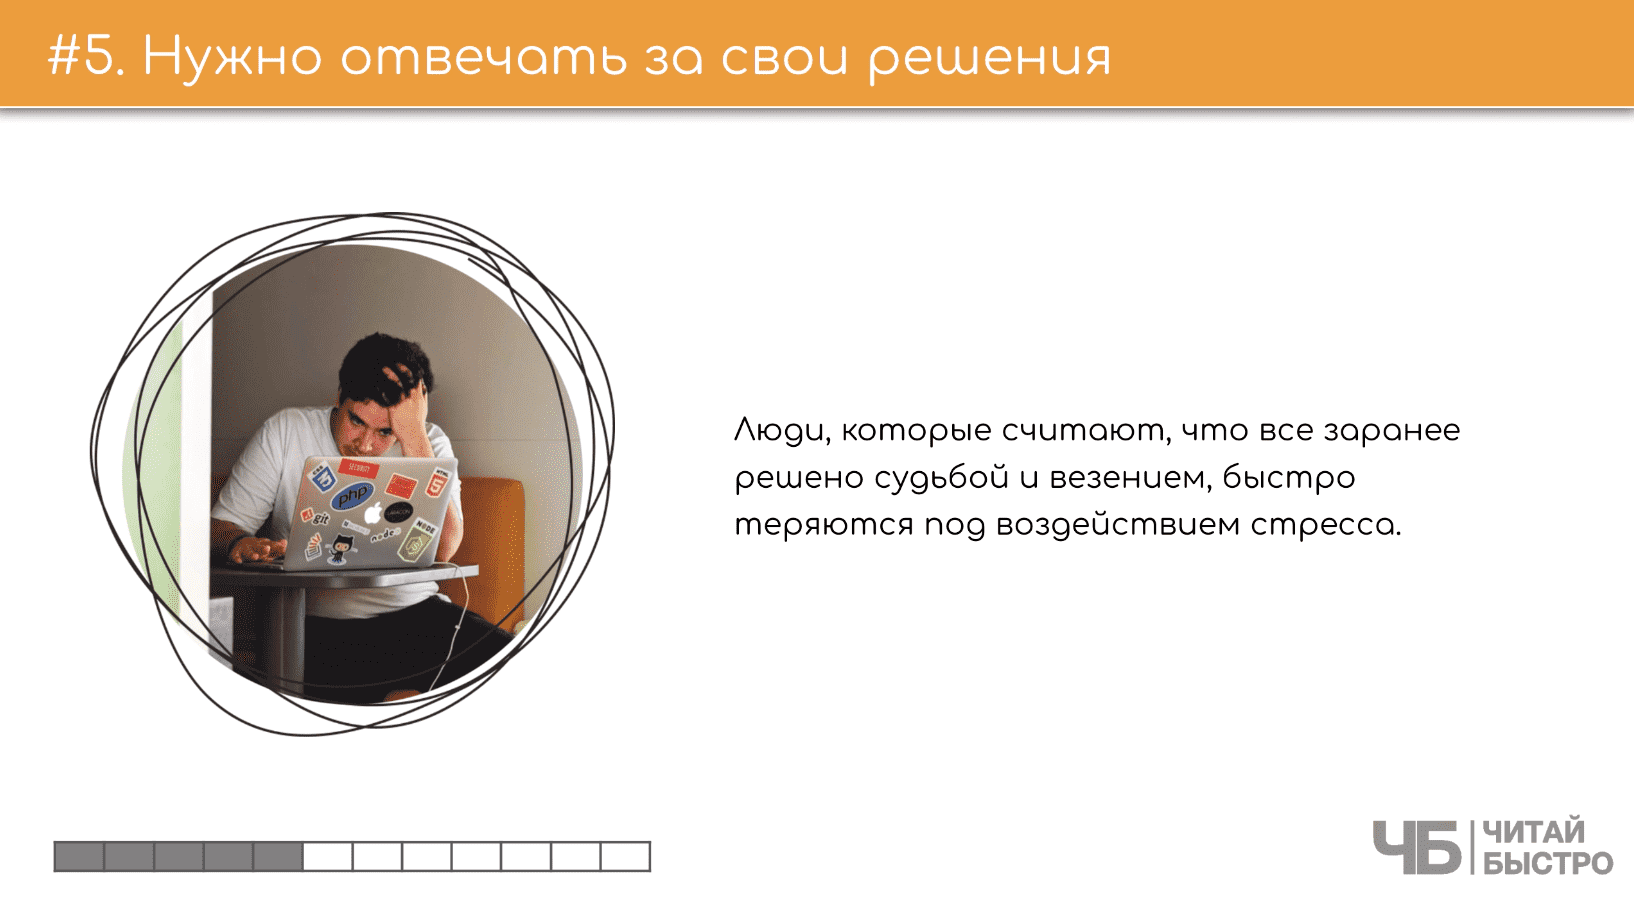 На этом слайде изображен тезис о том, что нужно отвечать за свои решения и иллюстрация мужчины с ноутбуком.